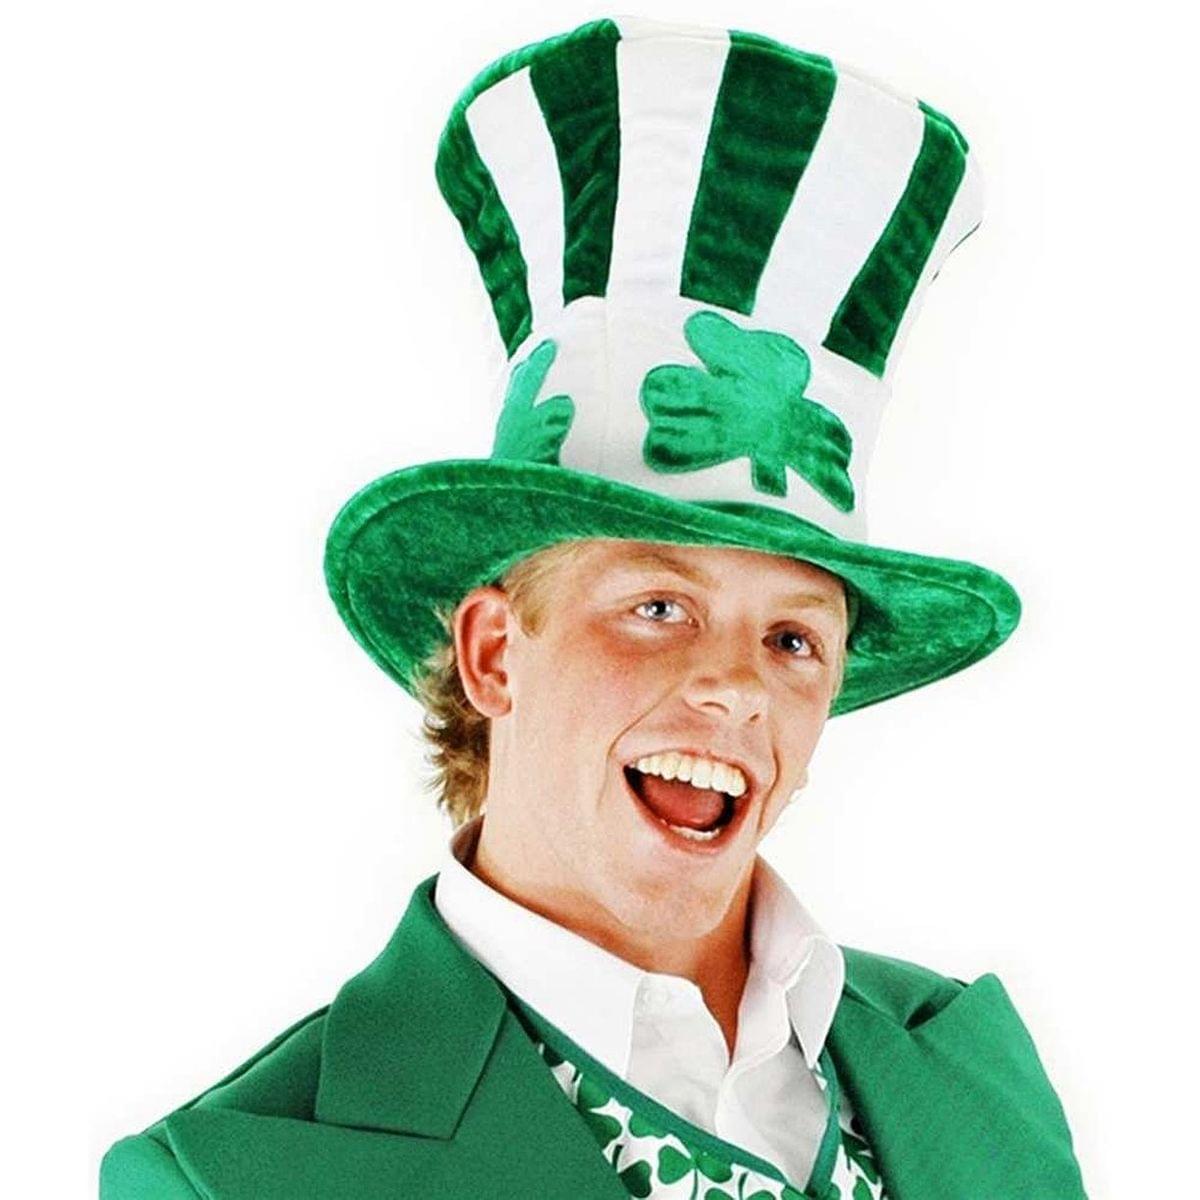 Irish Shamrock Uncle Sam Leprechaun Adult Hat Costume Accessory One Size